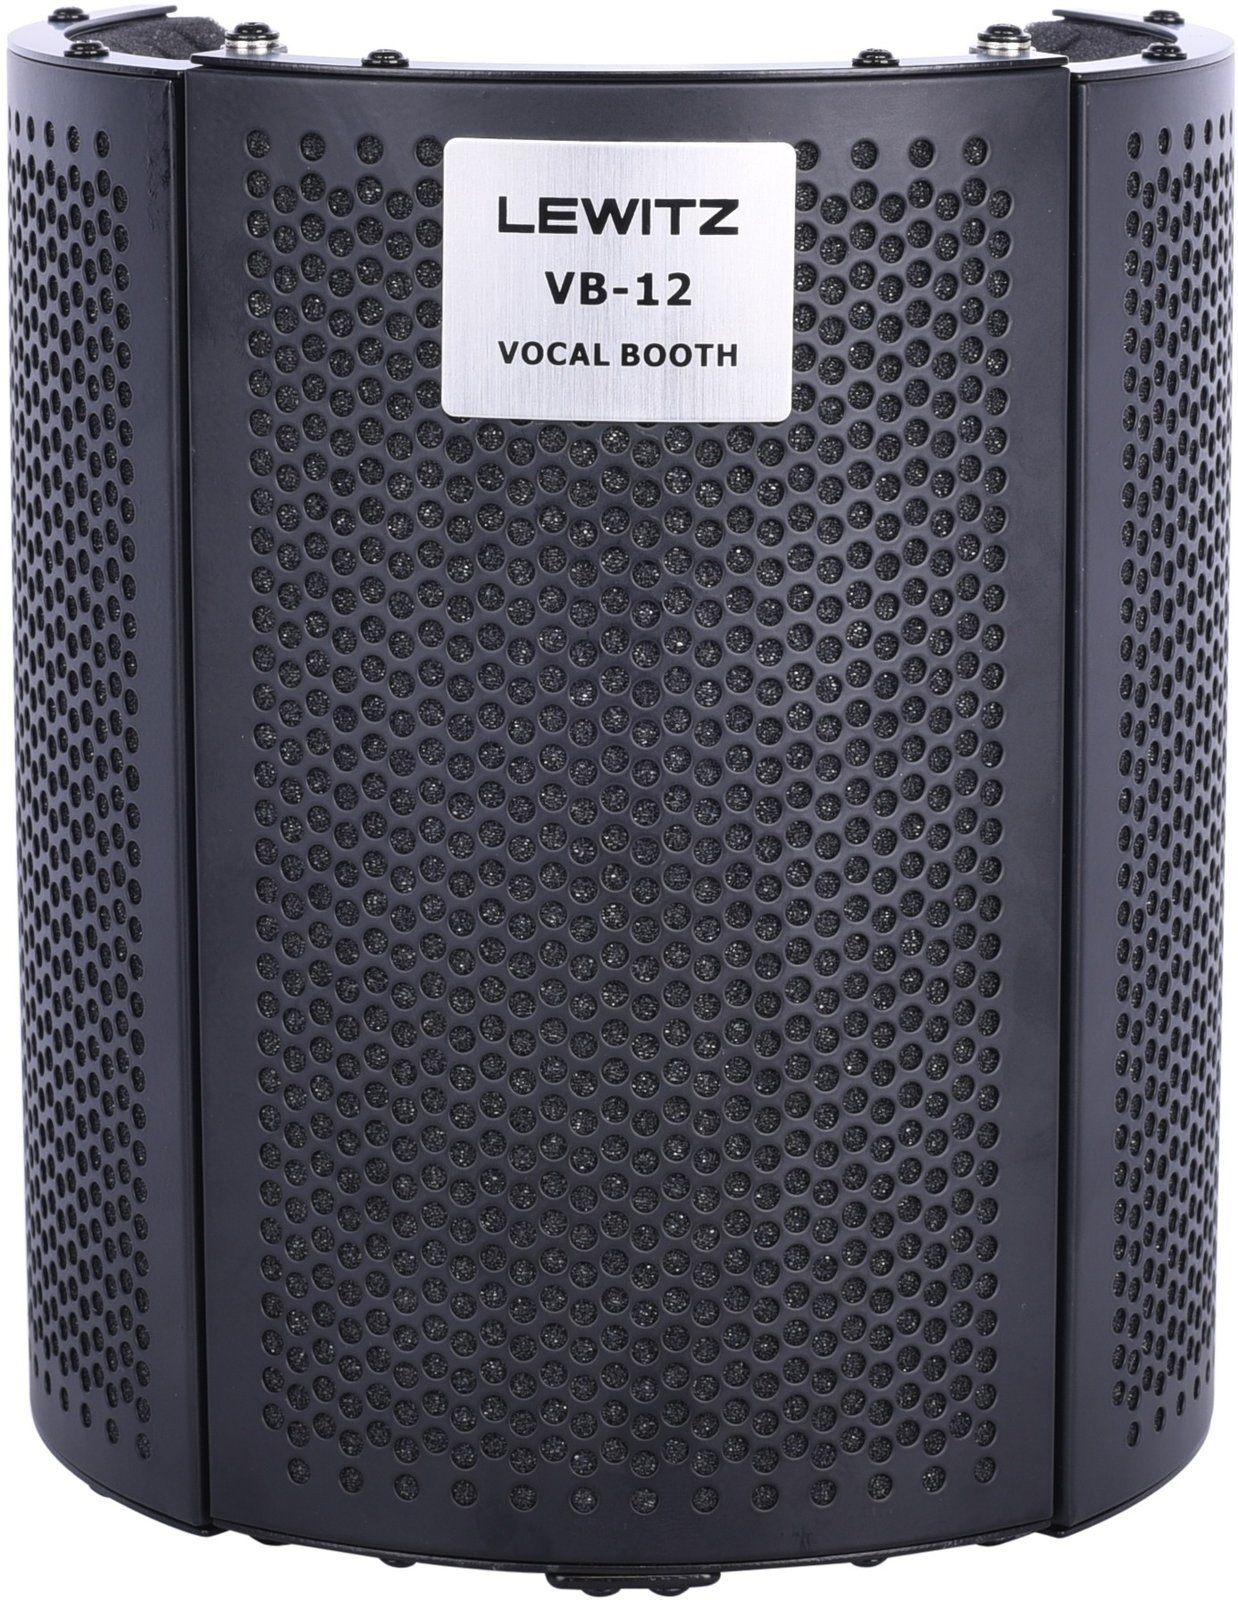 Přenosná akustická clona Lewitz VB-12